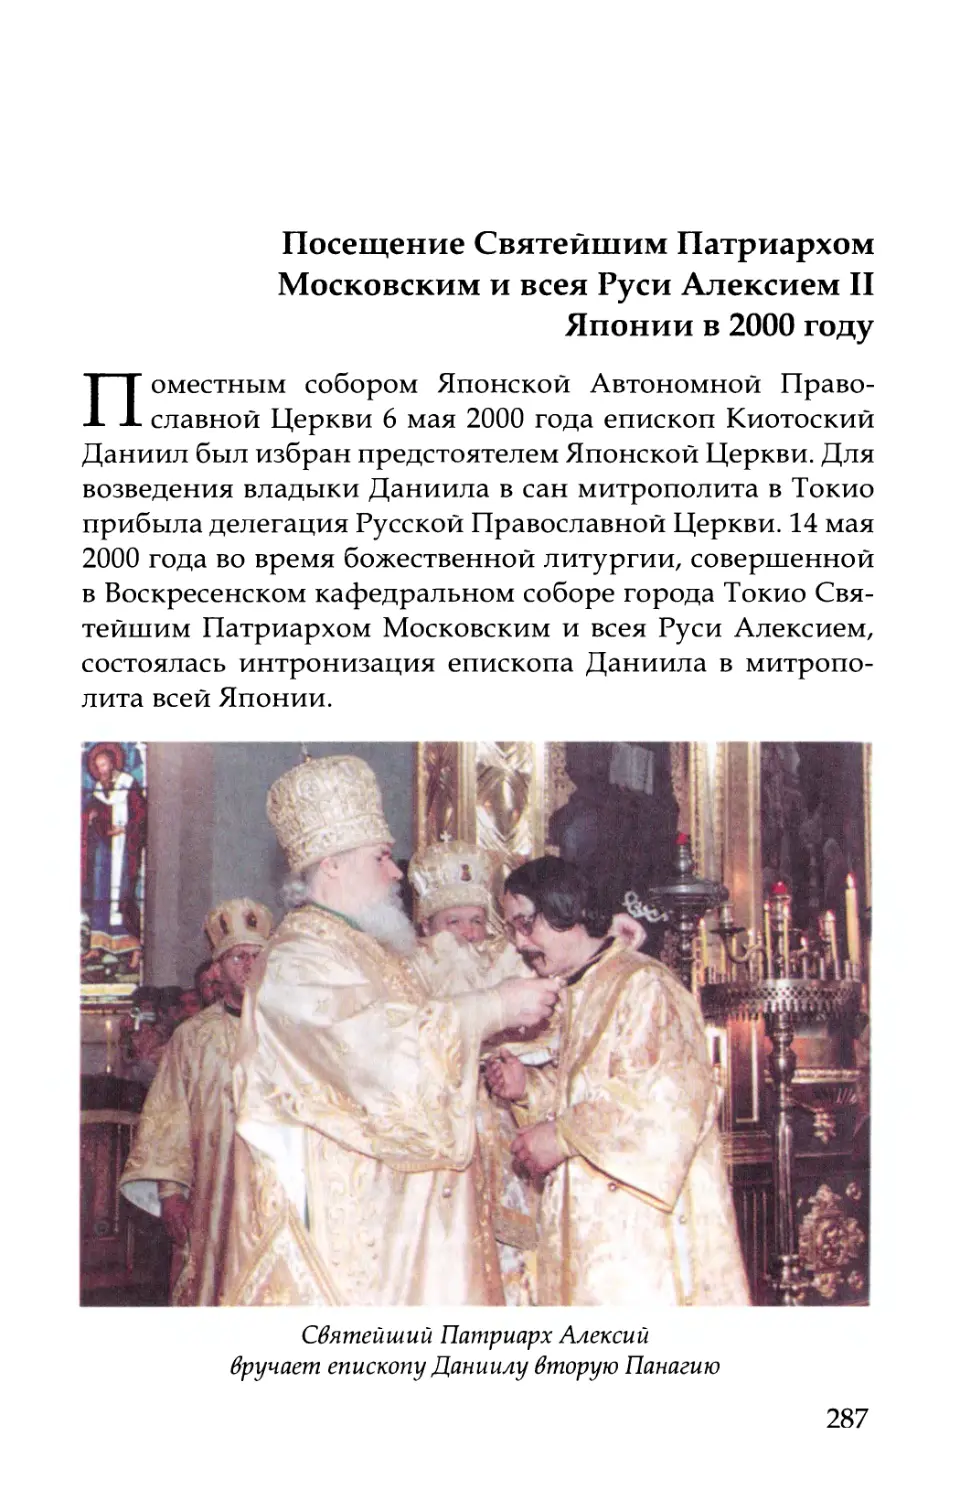 Посещение Патриархом Московским и всея Руси Алексием II Японии в 2000 году